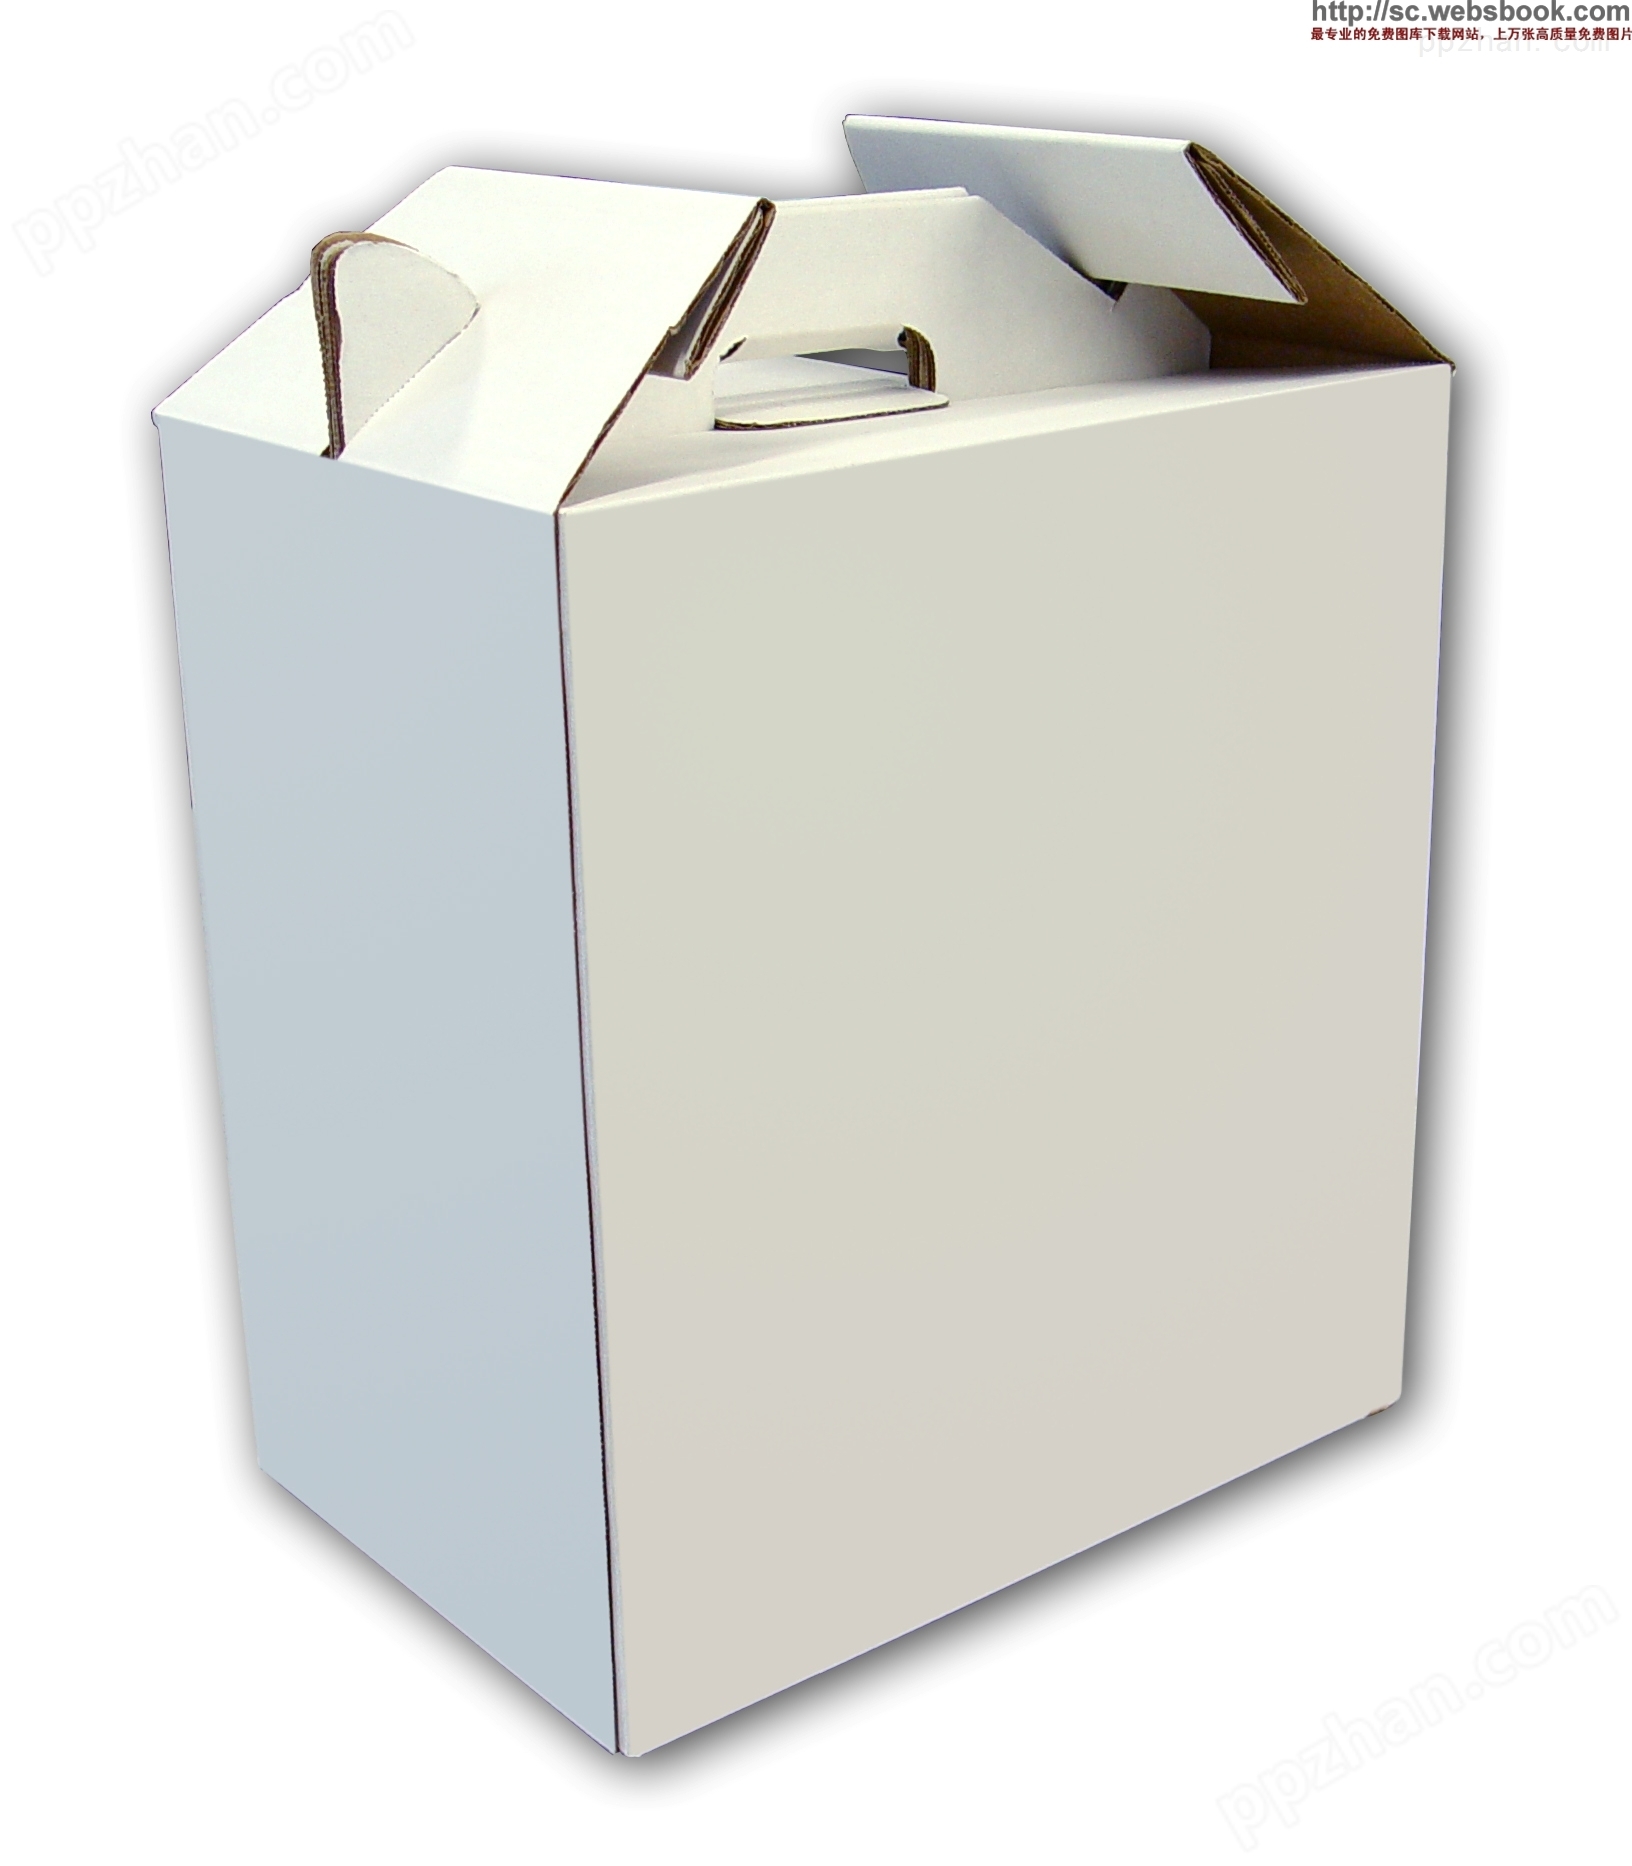 印刷厂家专业供应印刷纸盒 彩印纸盒